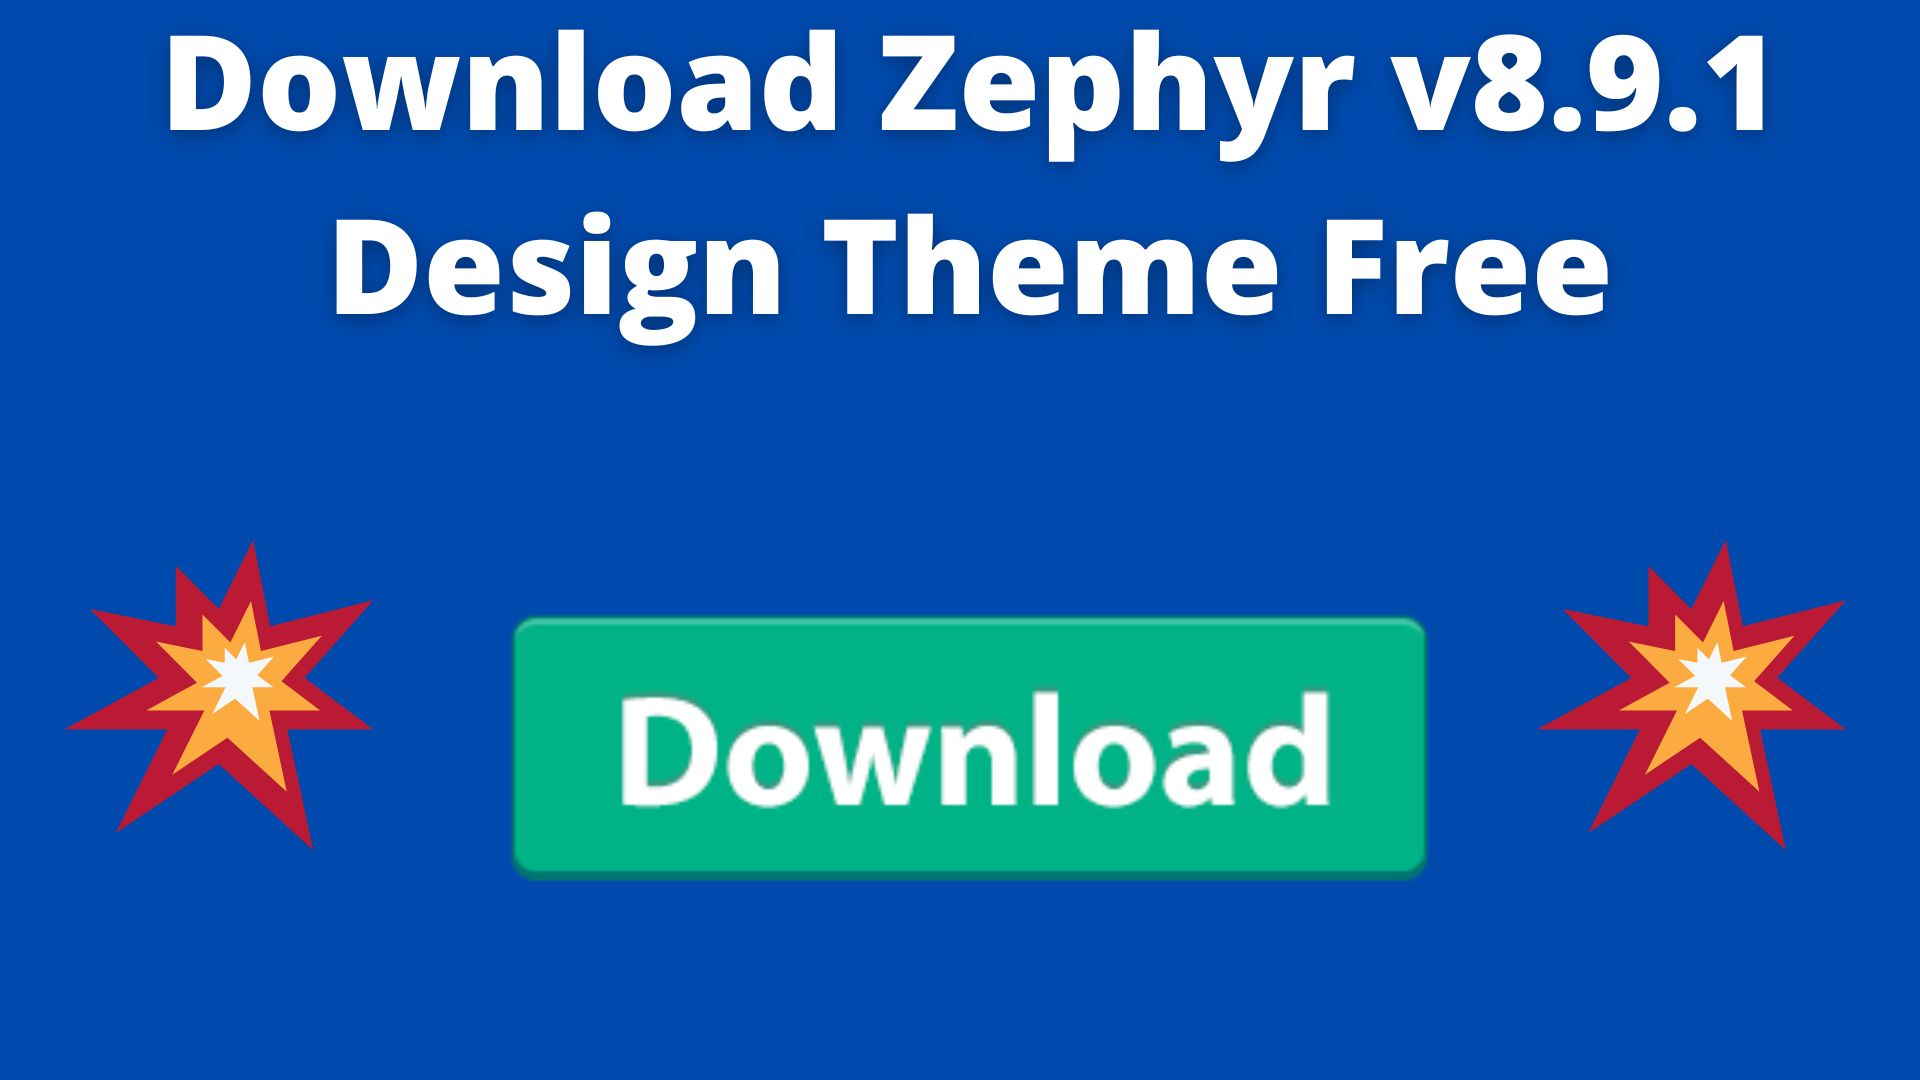 Download zephyr v8. 9. 1 design theme free